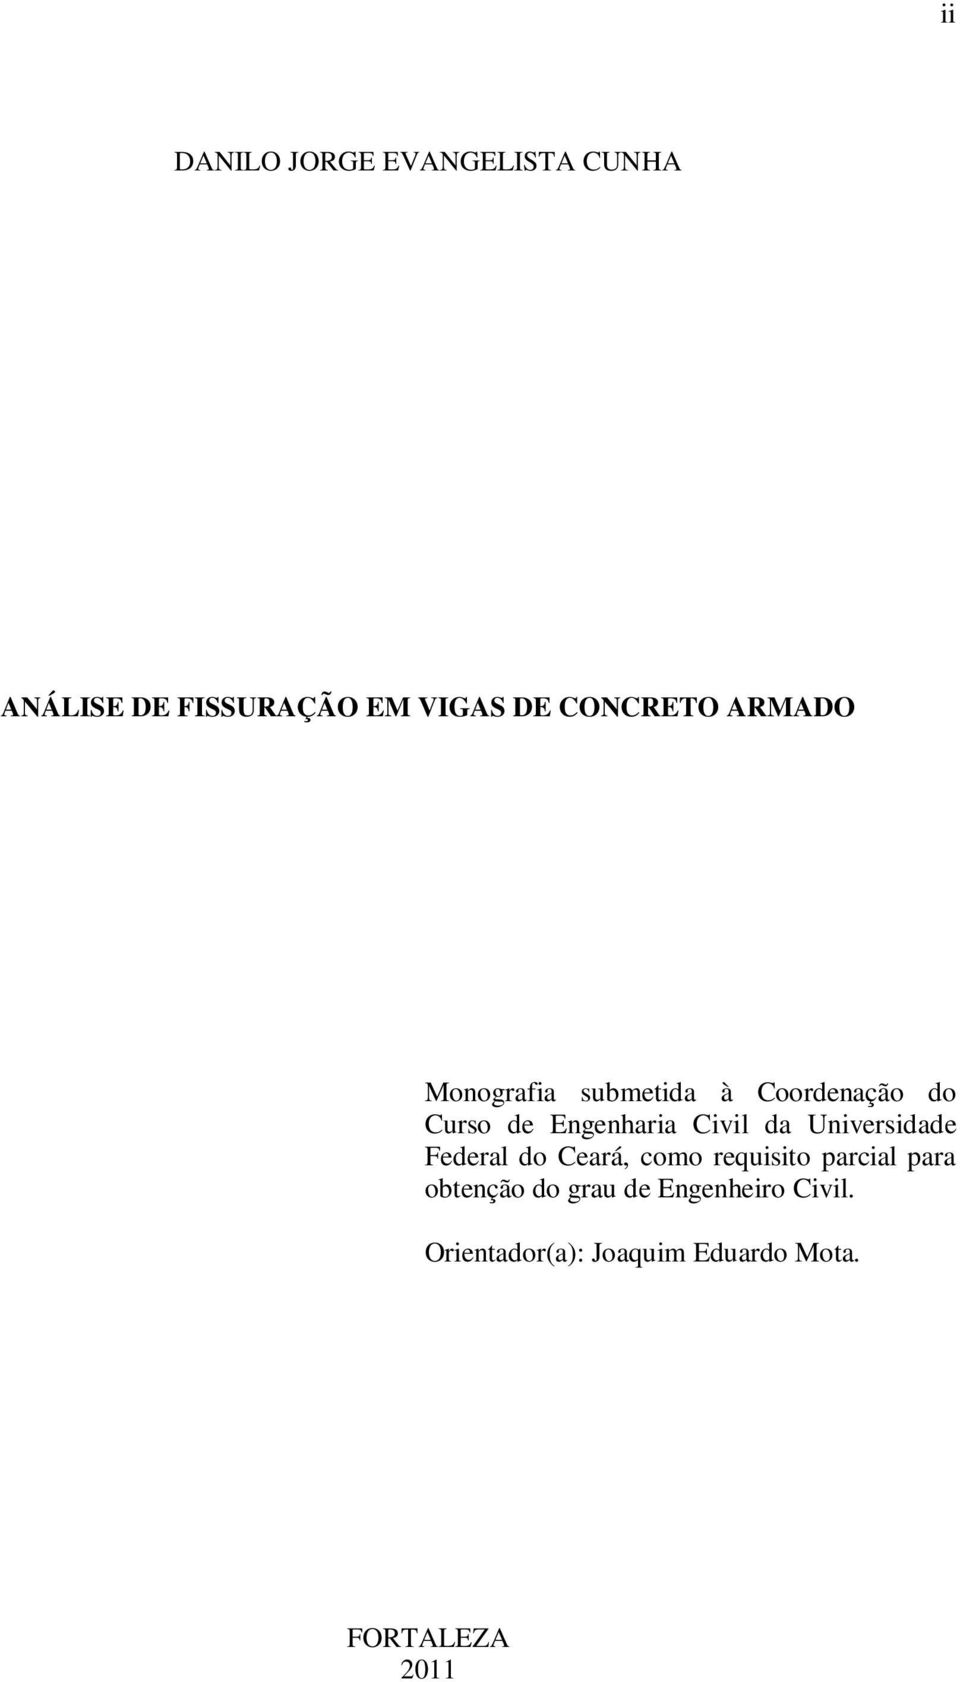 Civil da Universidade Federal do Ceará, como requisito parcial para